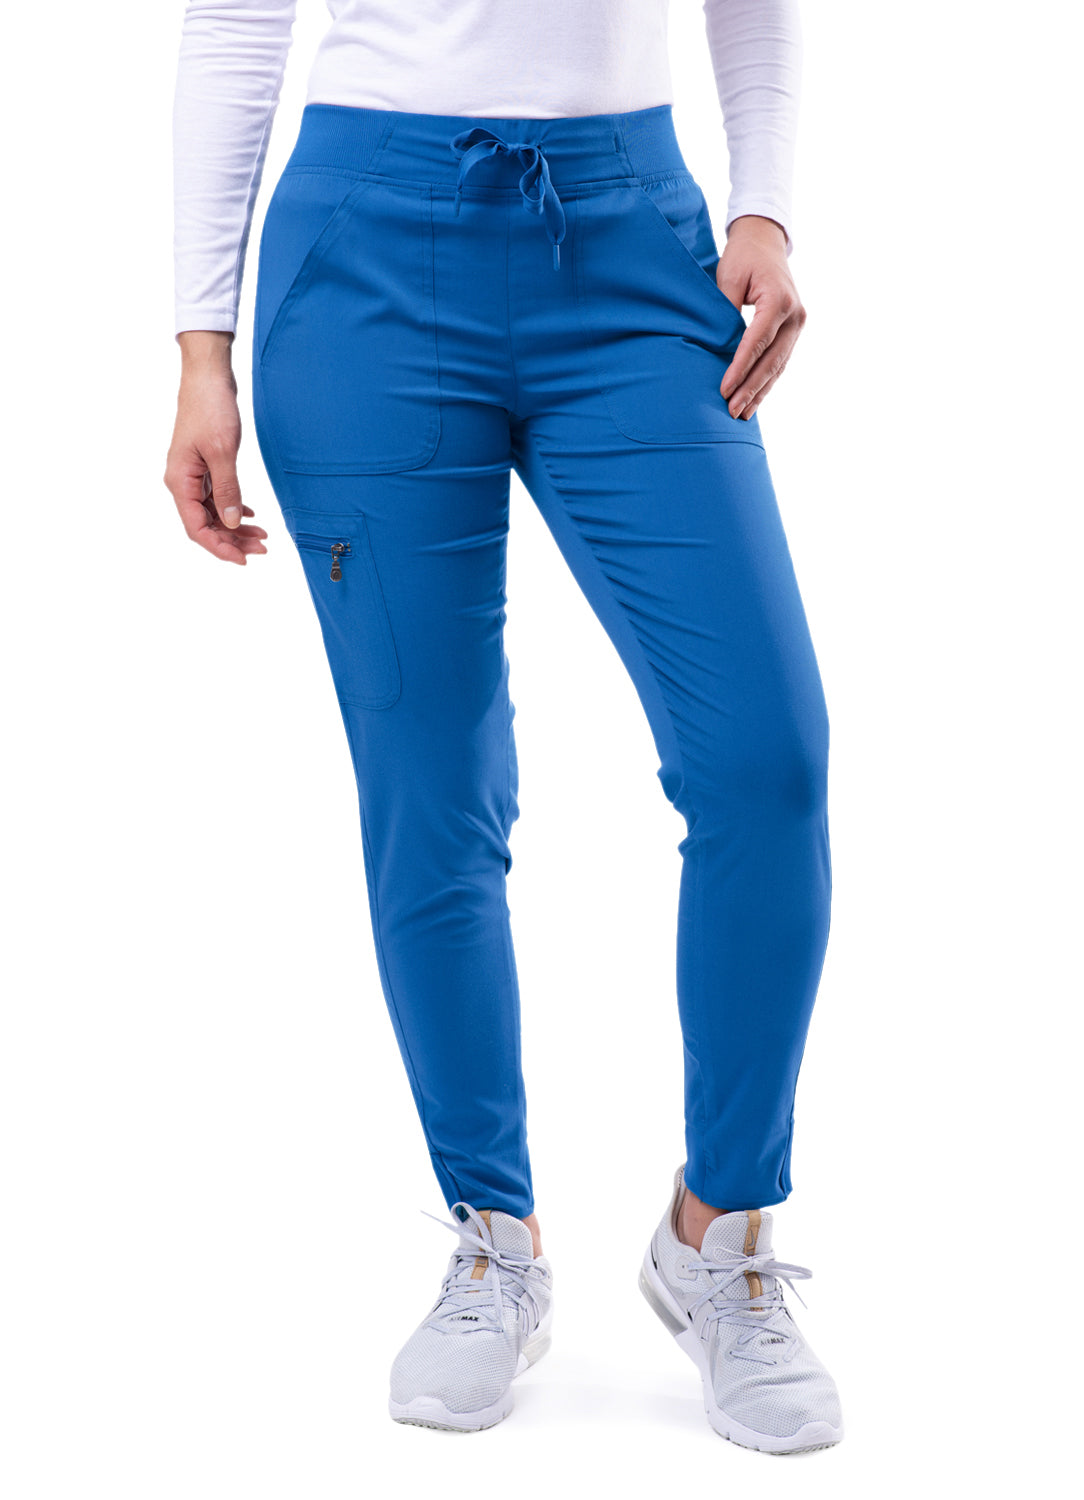 ADAR Pro Women's Stylish Jogger Royal Blue Scrub Pants Beyond Medwear Apparel